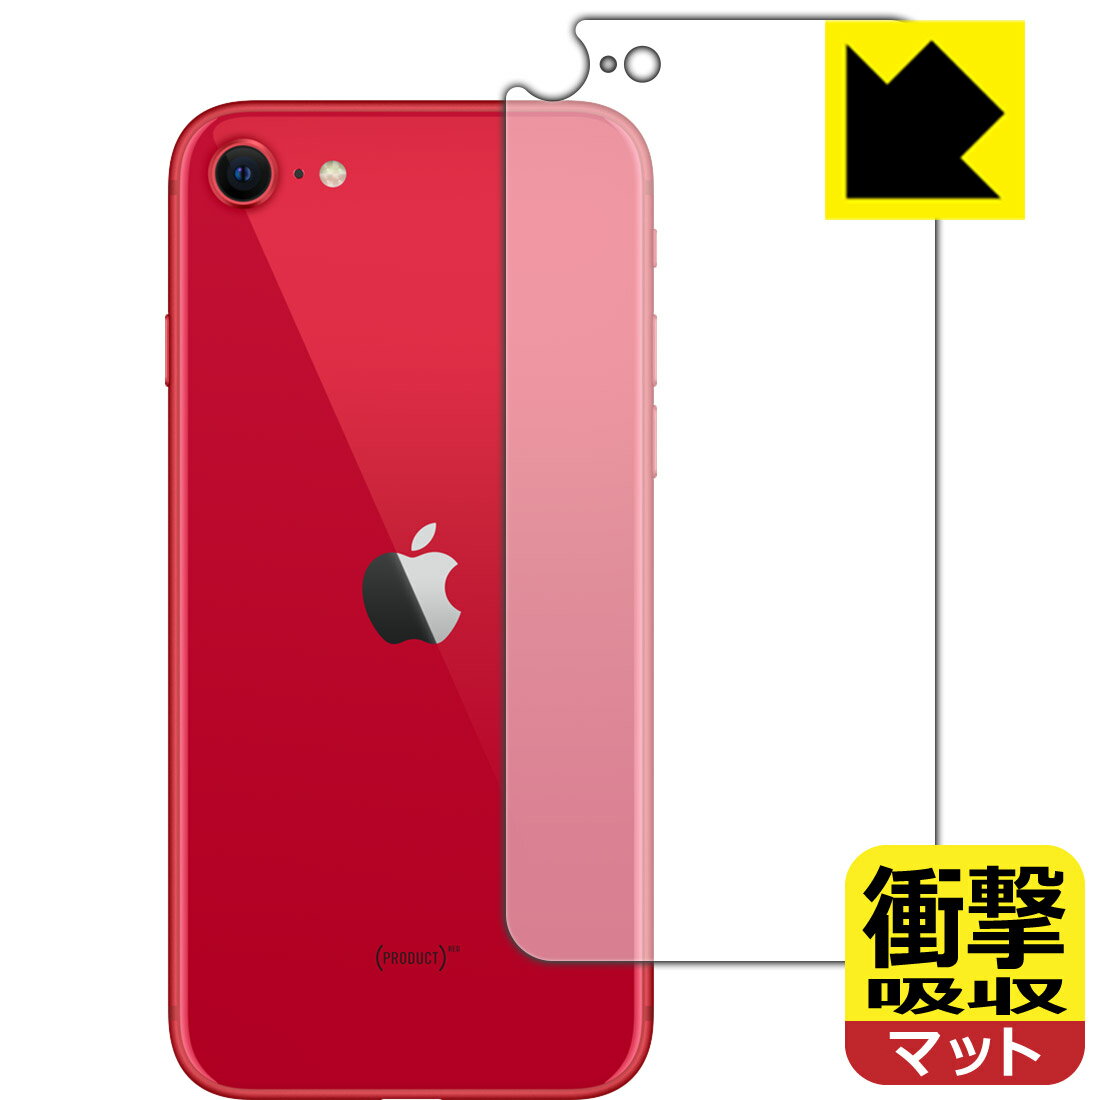 衝撃吸収【反射低減】保護フィルム iPhone SE (第2世代) 背面のみ 【J型】 日本製 自社製造直販